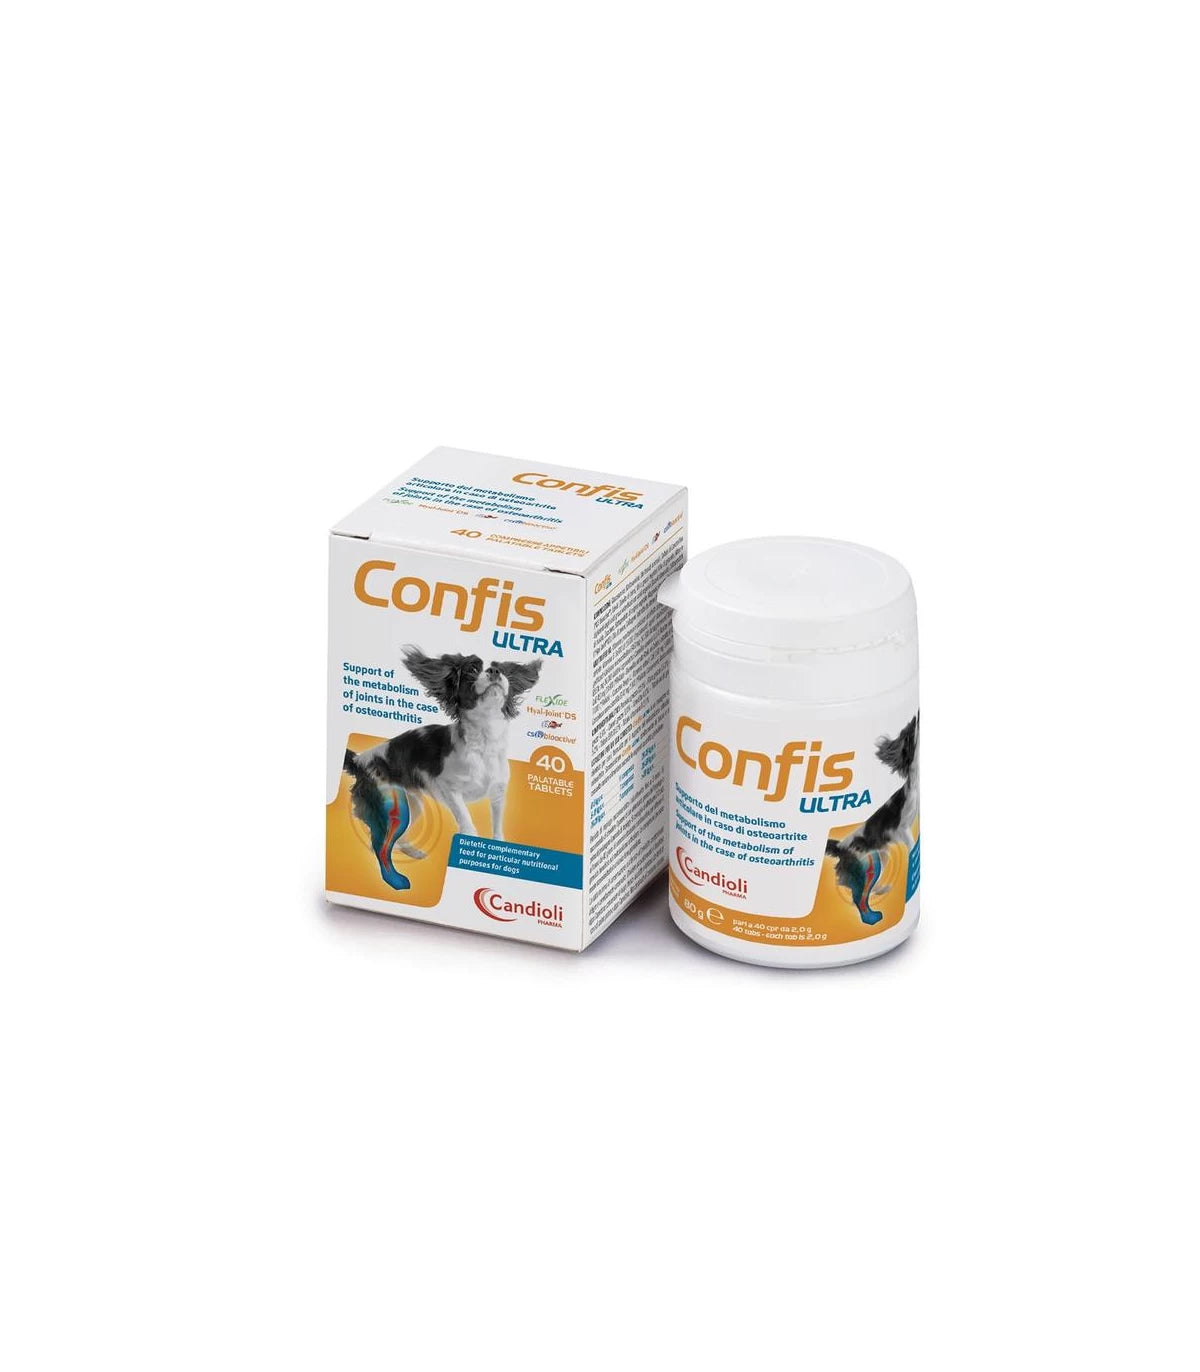 CONFIS ULTRA (40 cpr) – Per il trattamento dell’osteartrite articolare